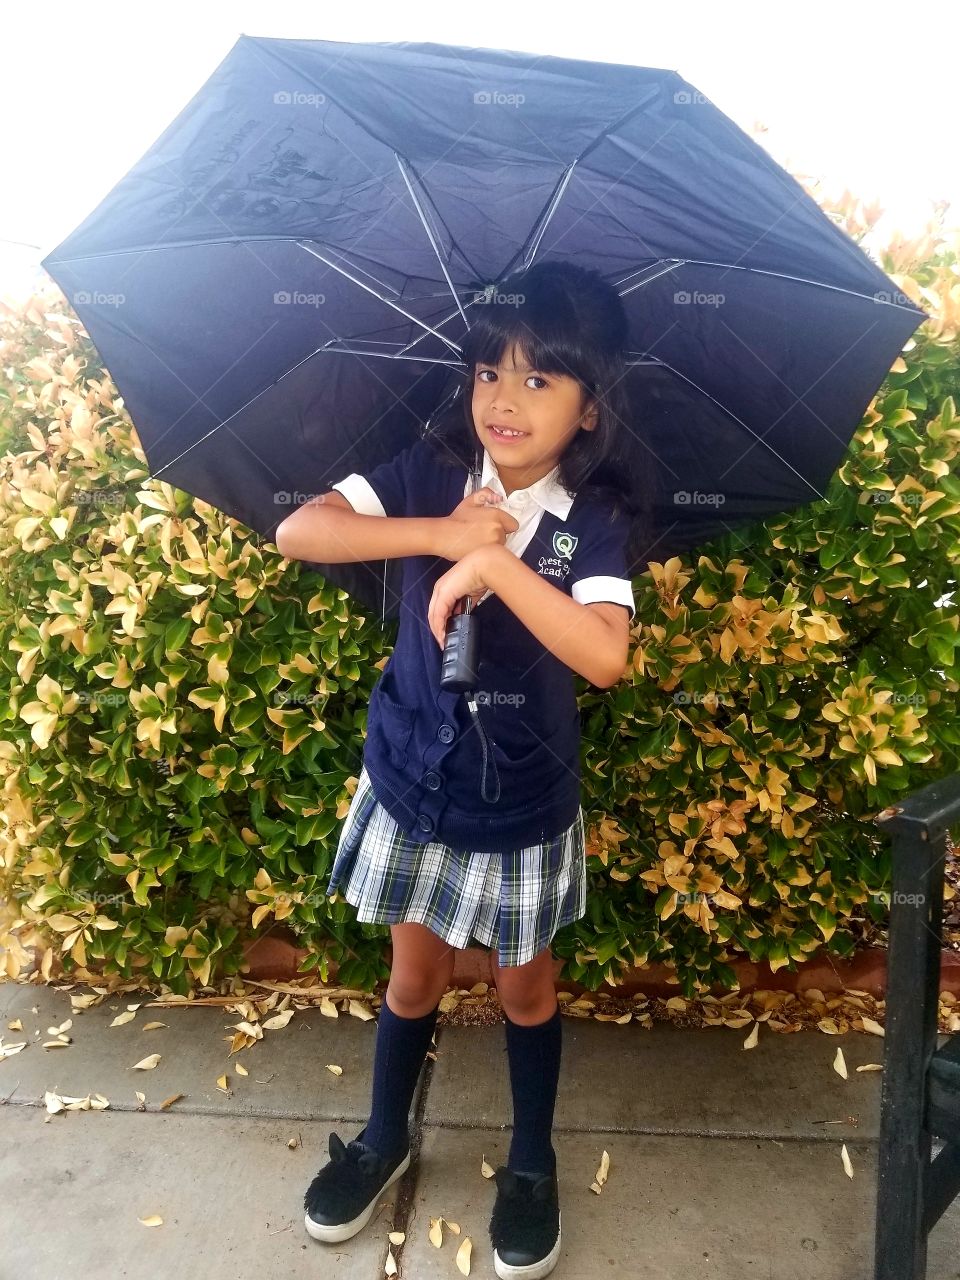 Rainy Day at School